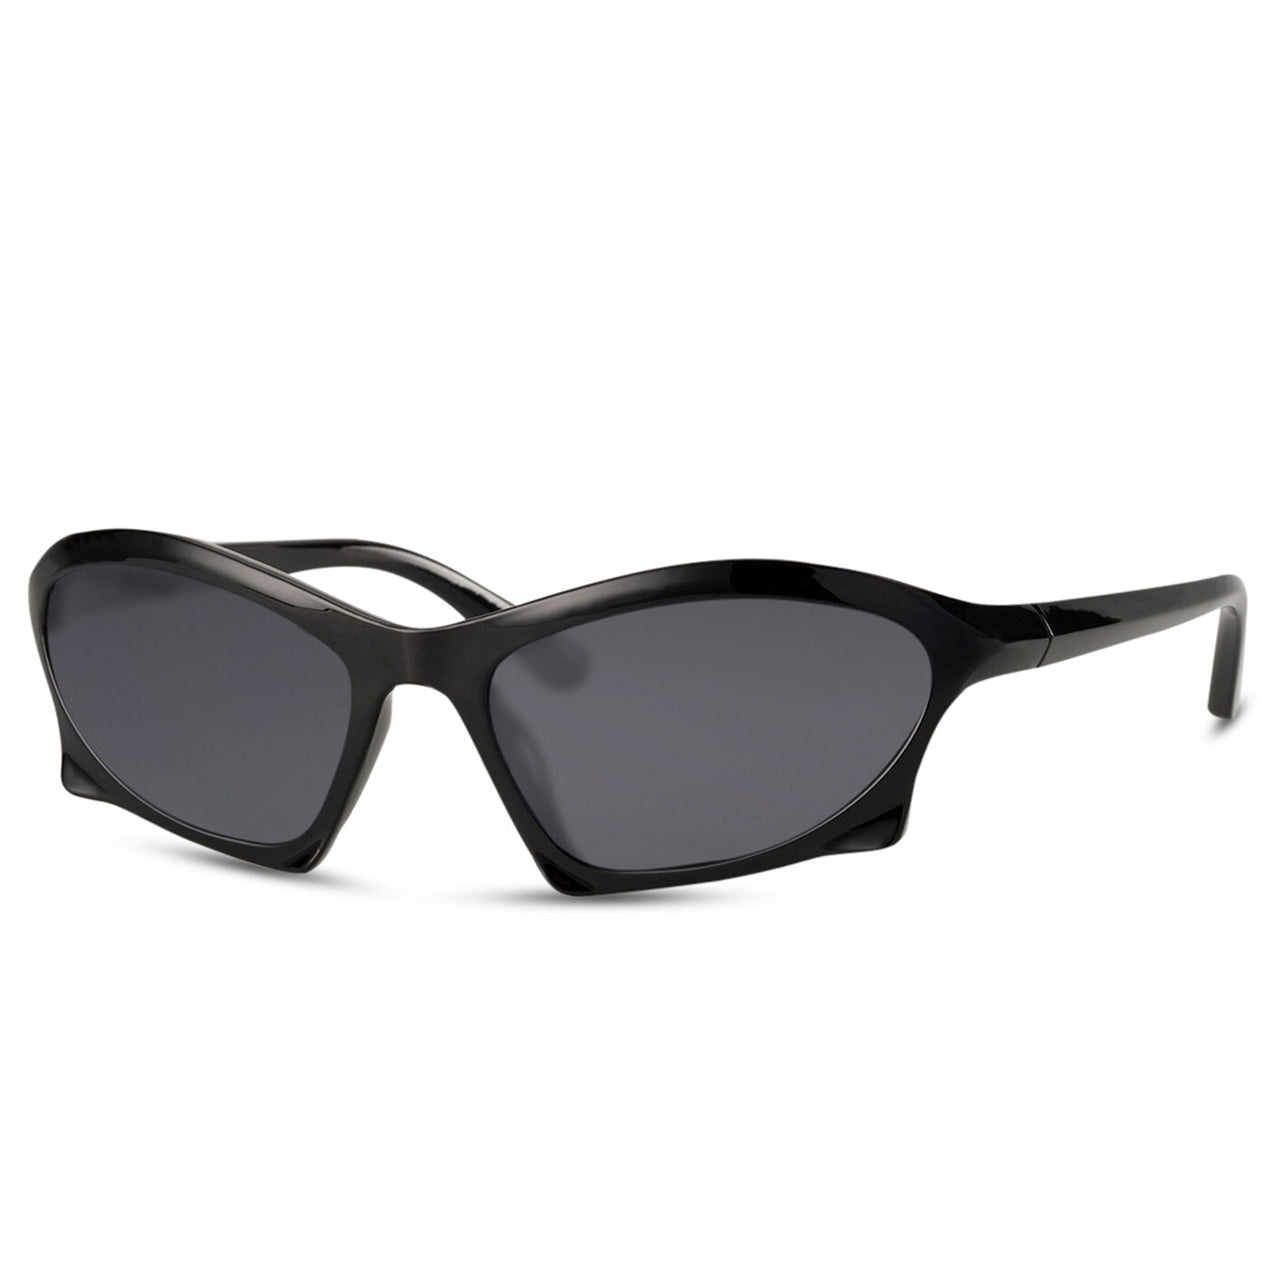 Snash - Sonnenbrille Techno schwarz